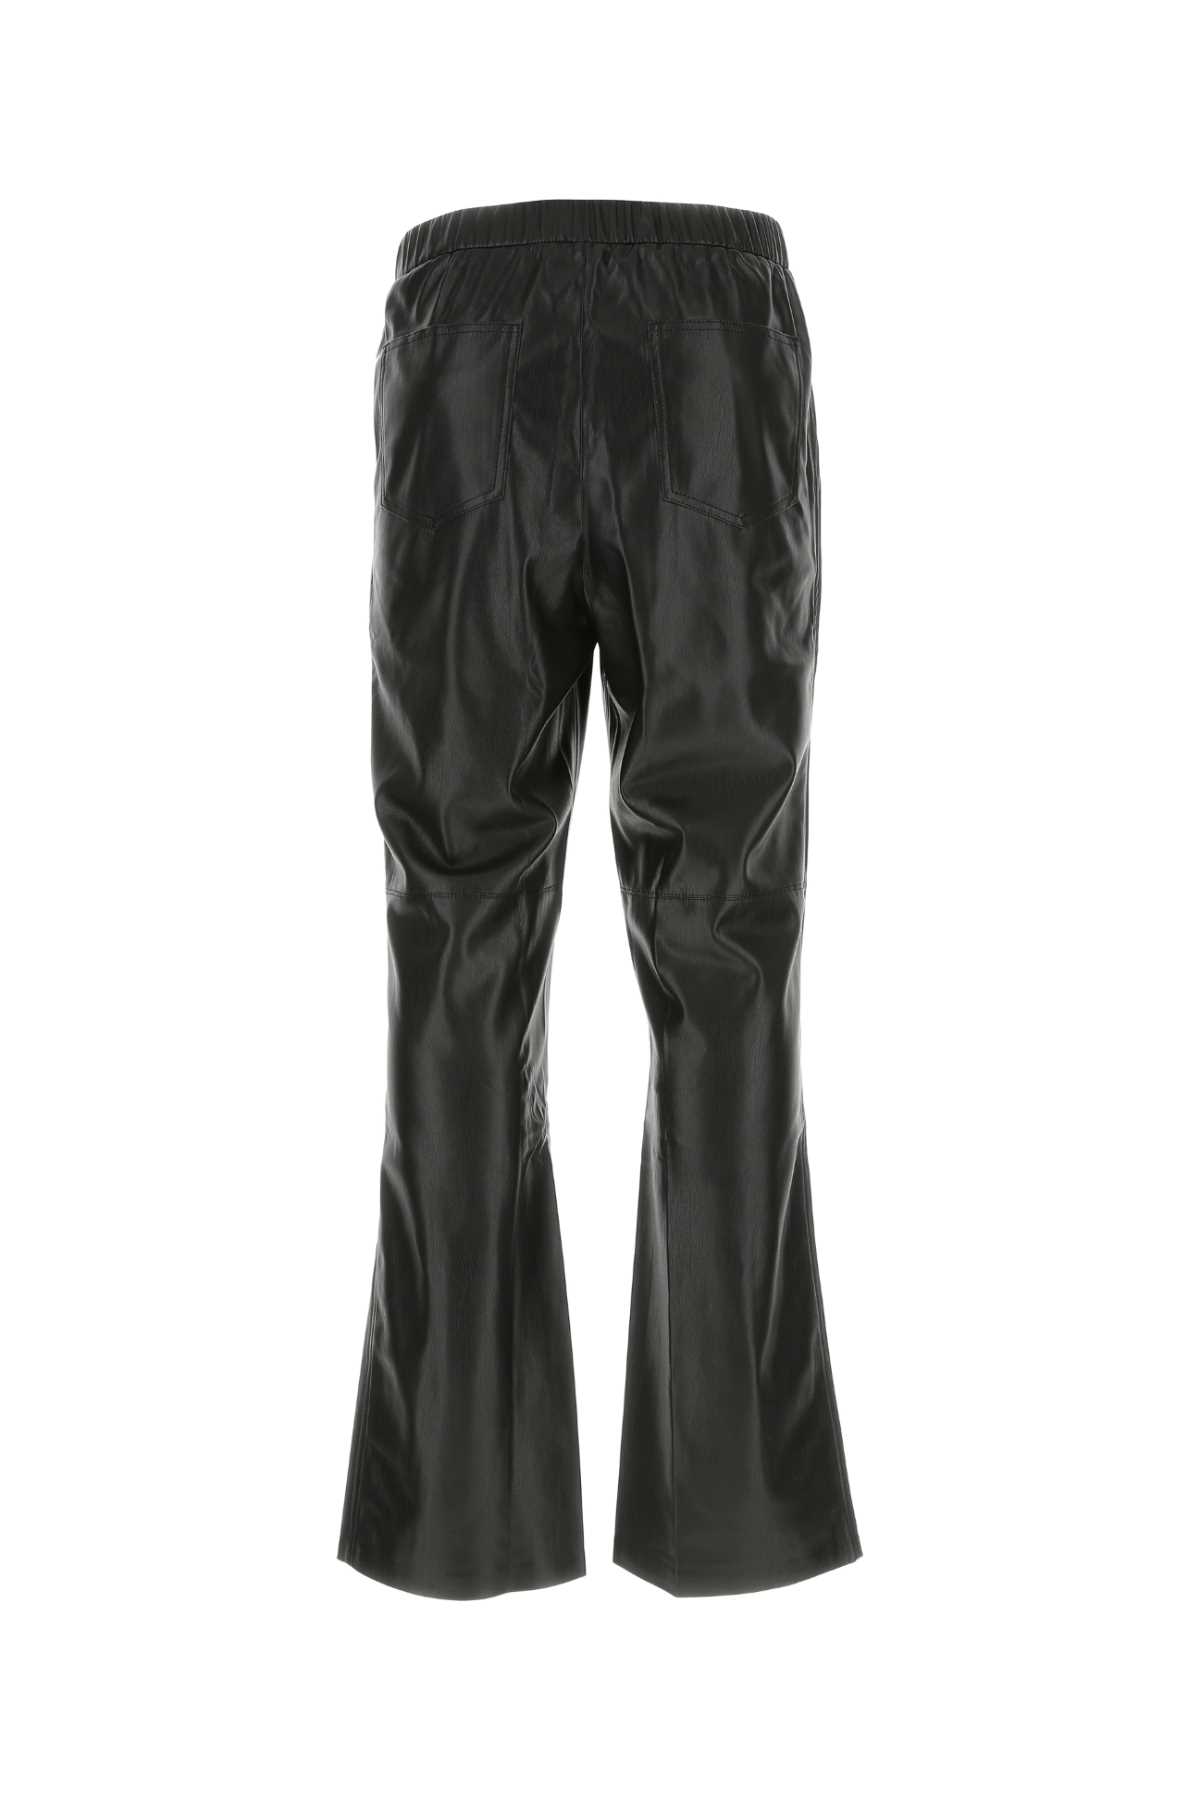 Shop Nanushka Black Synthetic Leather Maven Pant